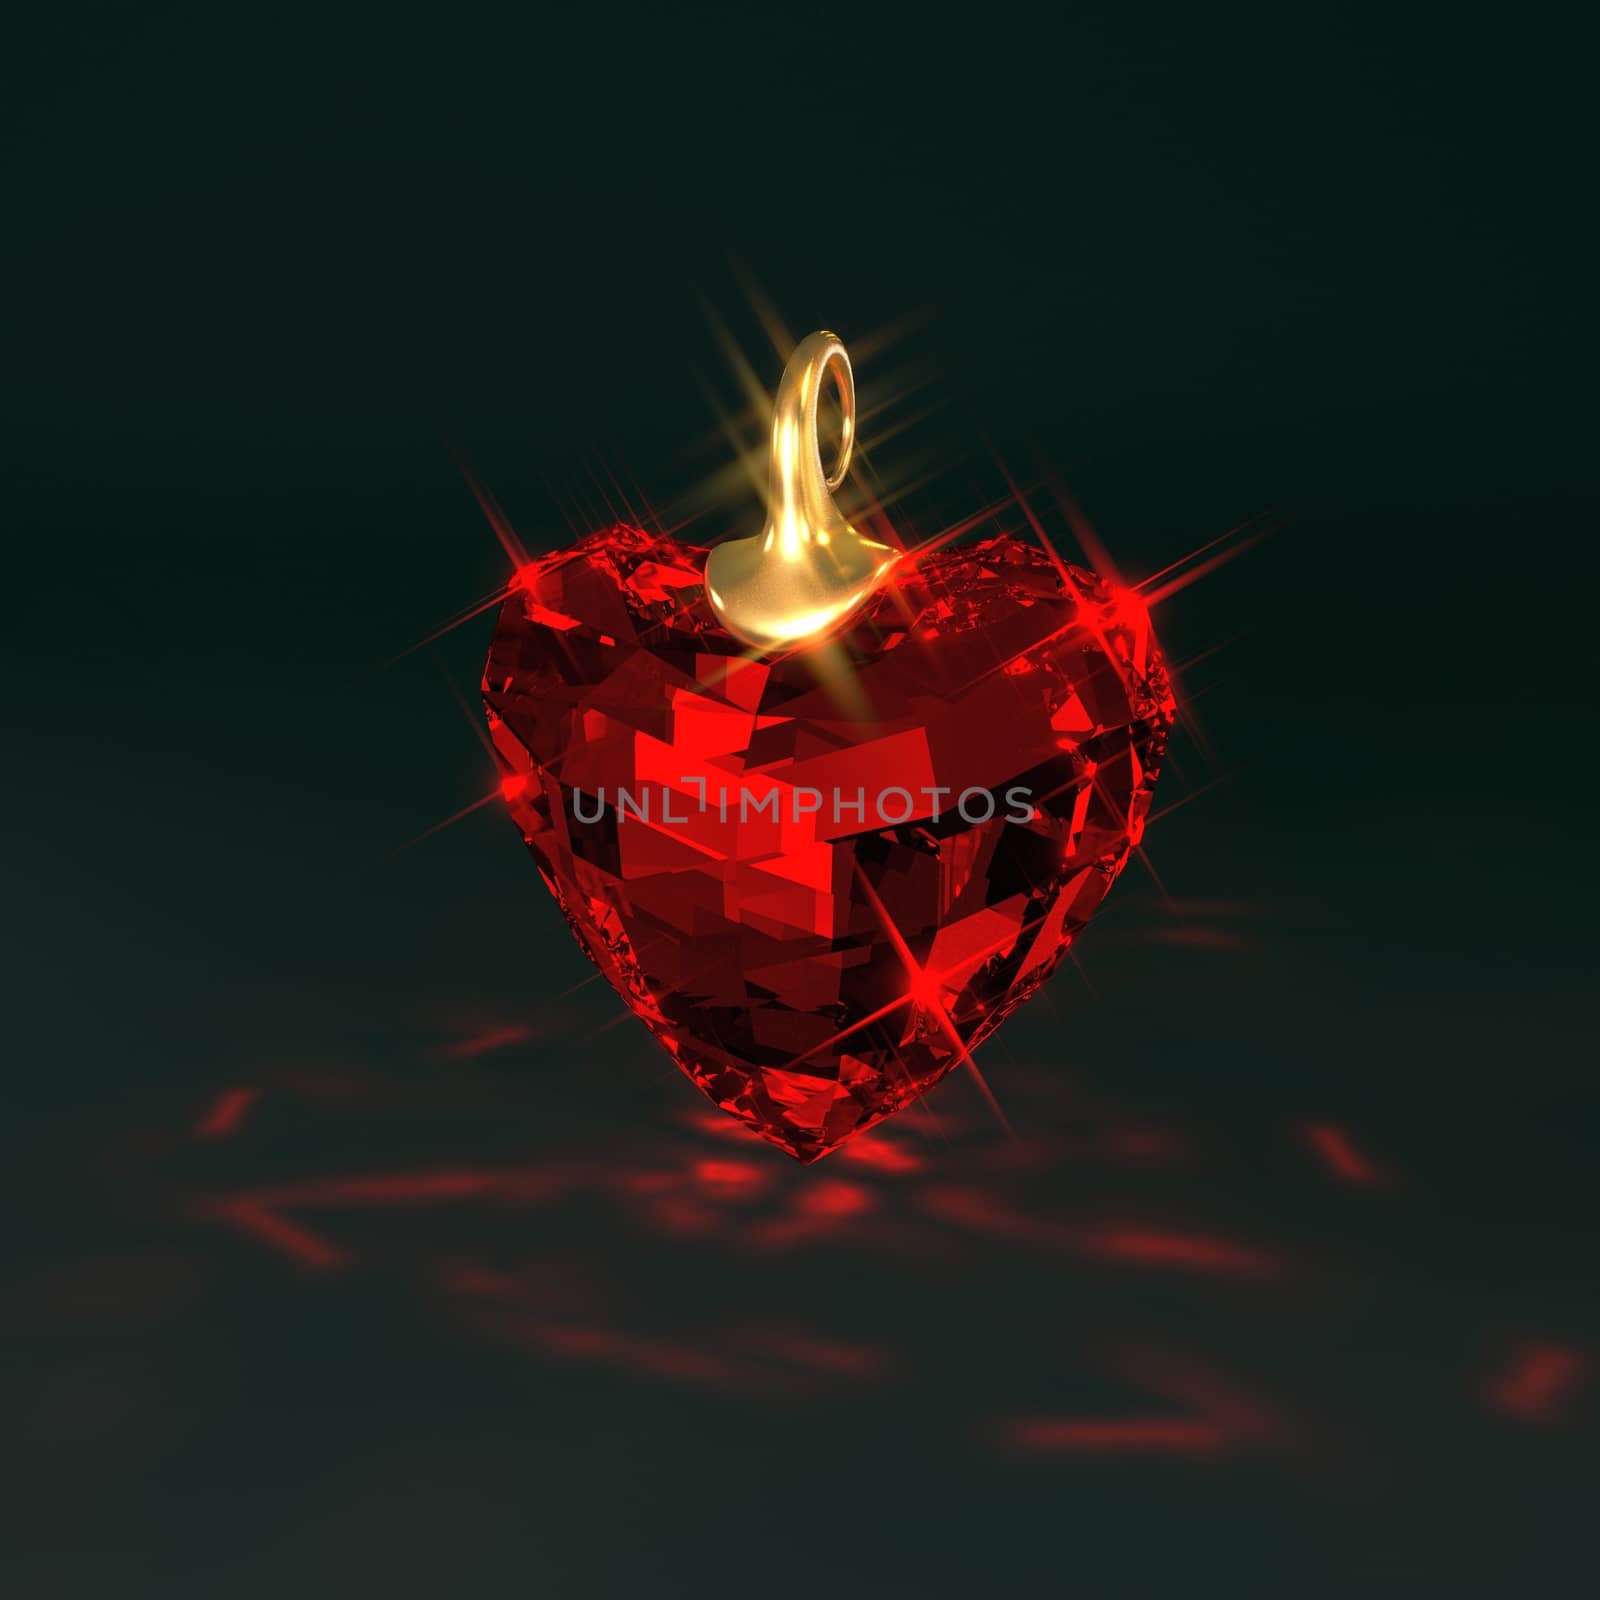 Ruby red gem heart, 3d illustration Background